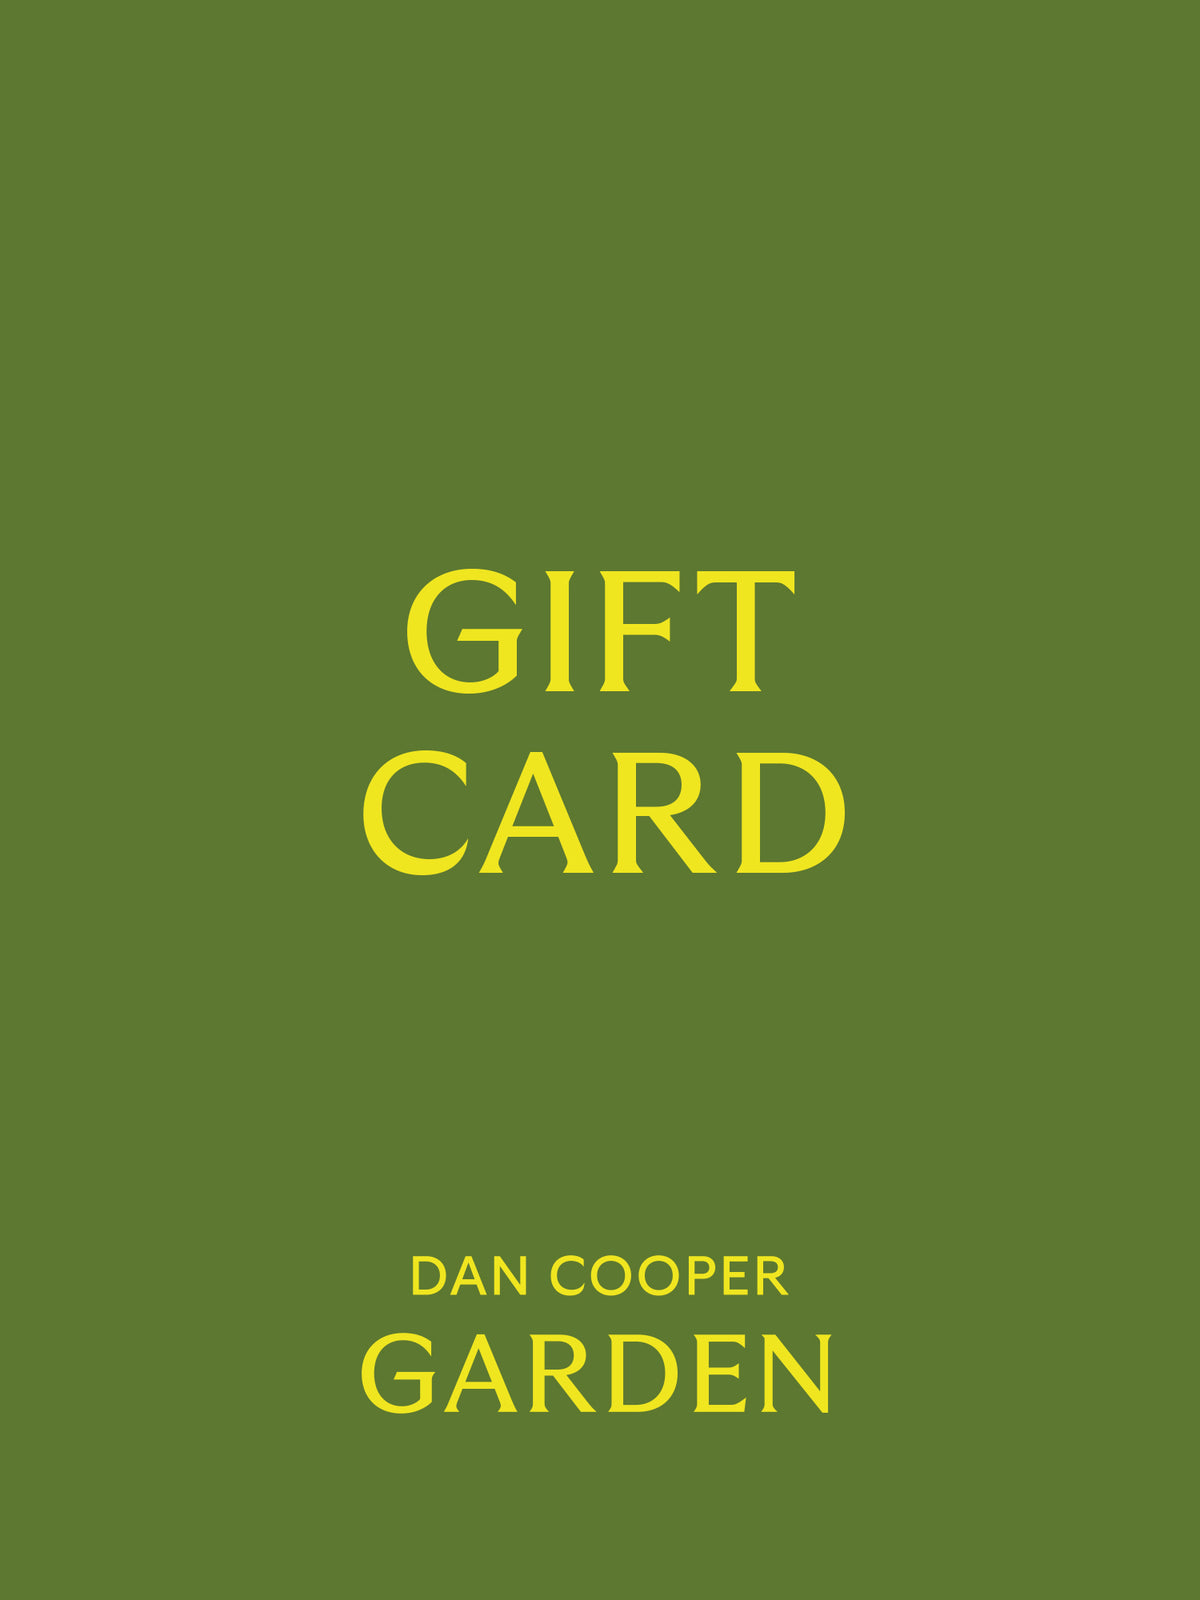 Dan Cooper Garden Digital Gift Card